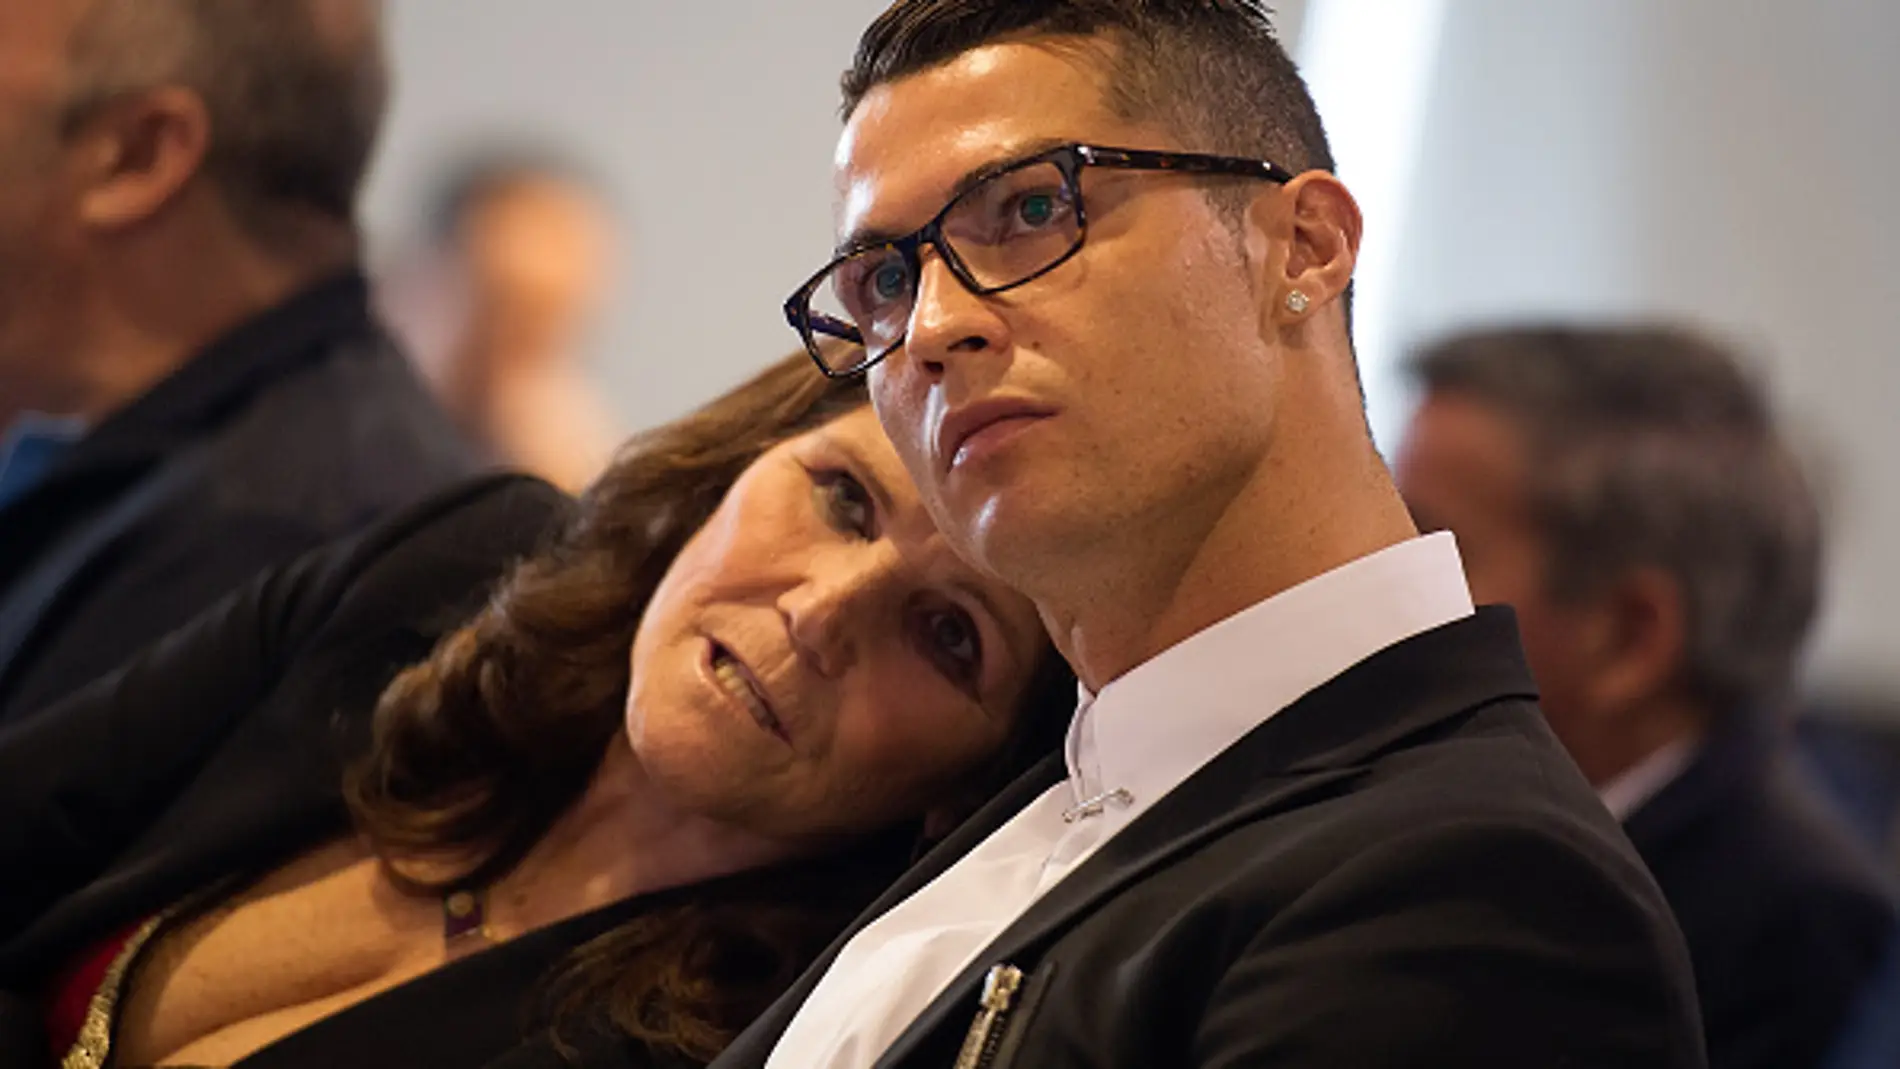 Maria Dolores dos Santos Aveiro, la madre de Cristiano Ronaldo